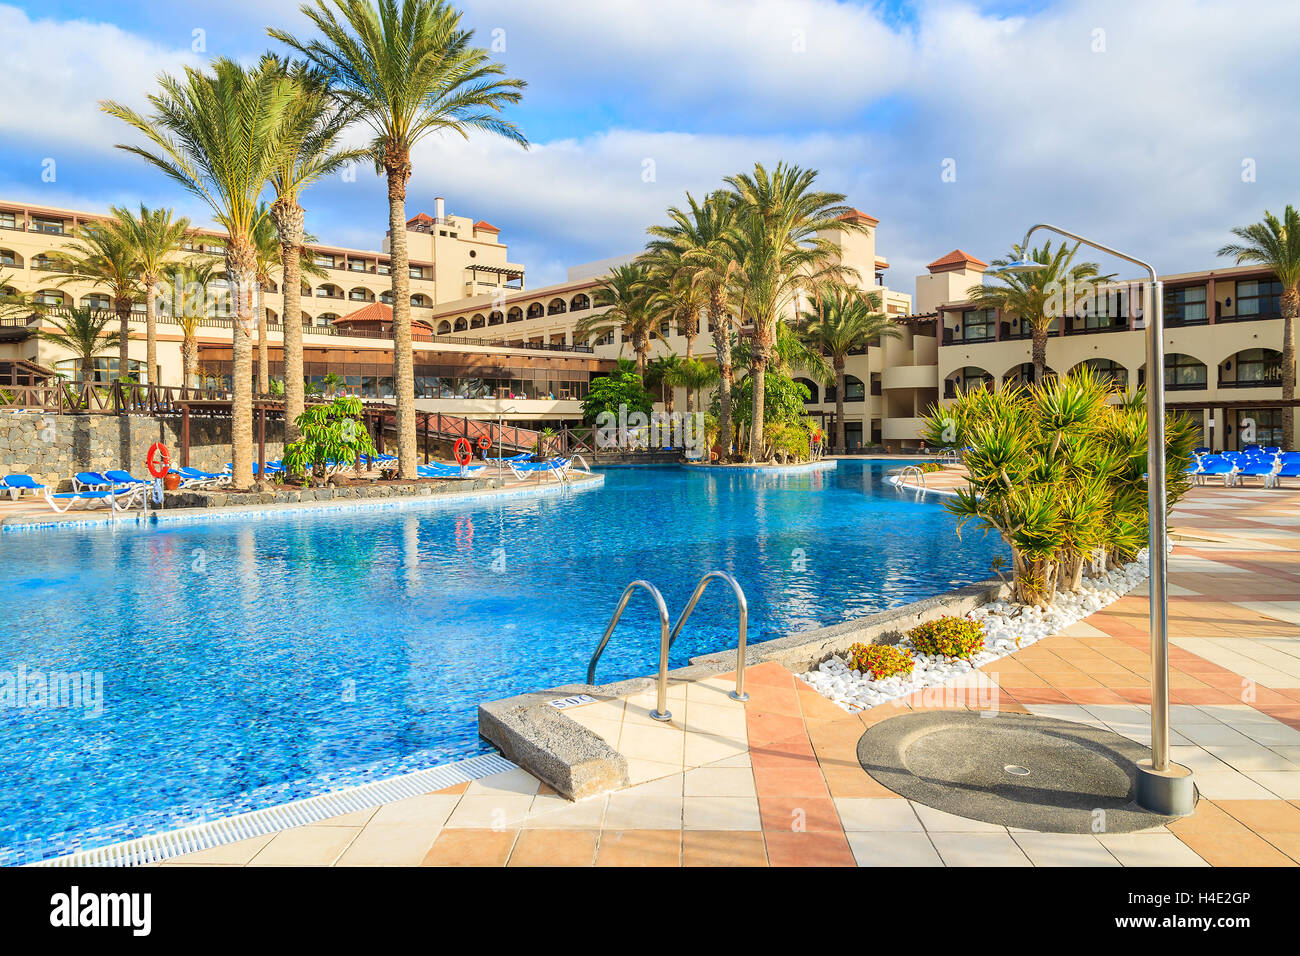 MORRO Jable, Fuerteventura - Feb 6, 2014: piscina de un lujoso hotel Barceló Jandía Mar en la ciudad de Morro Jable. Este es un popular destino de vacaciones para los turistas en la isla de Fuerteventura. Foto de stock